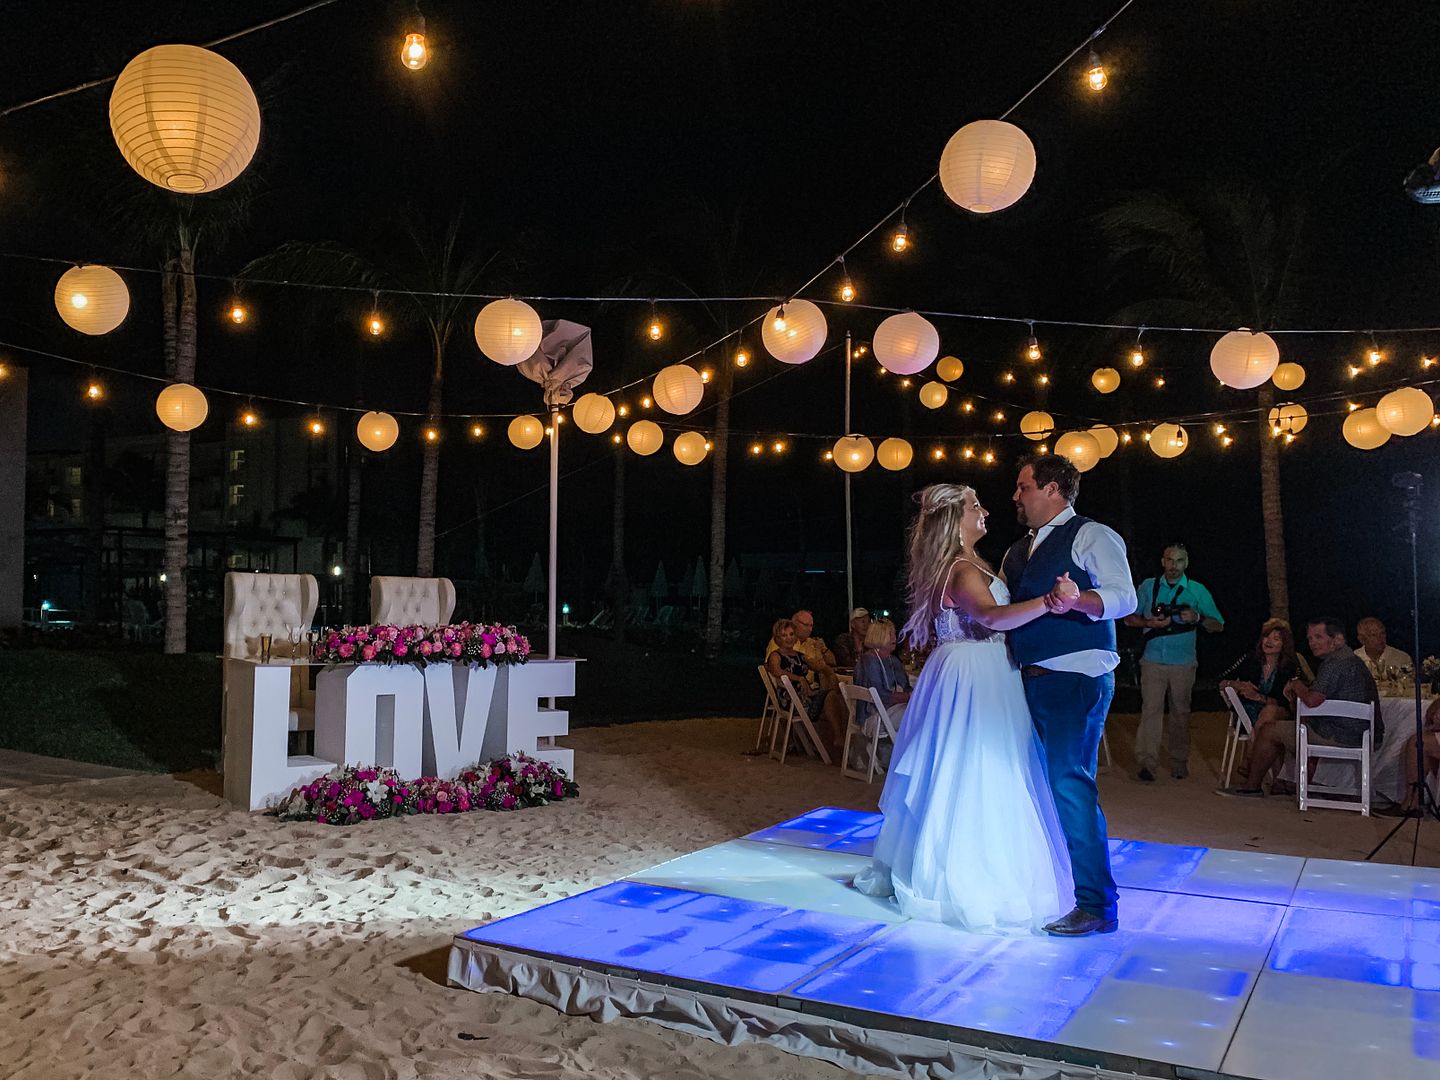 RIU Dunamar beach wedding reception Cancun